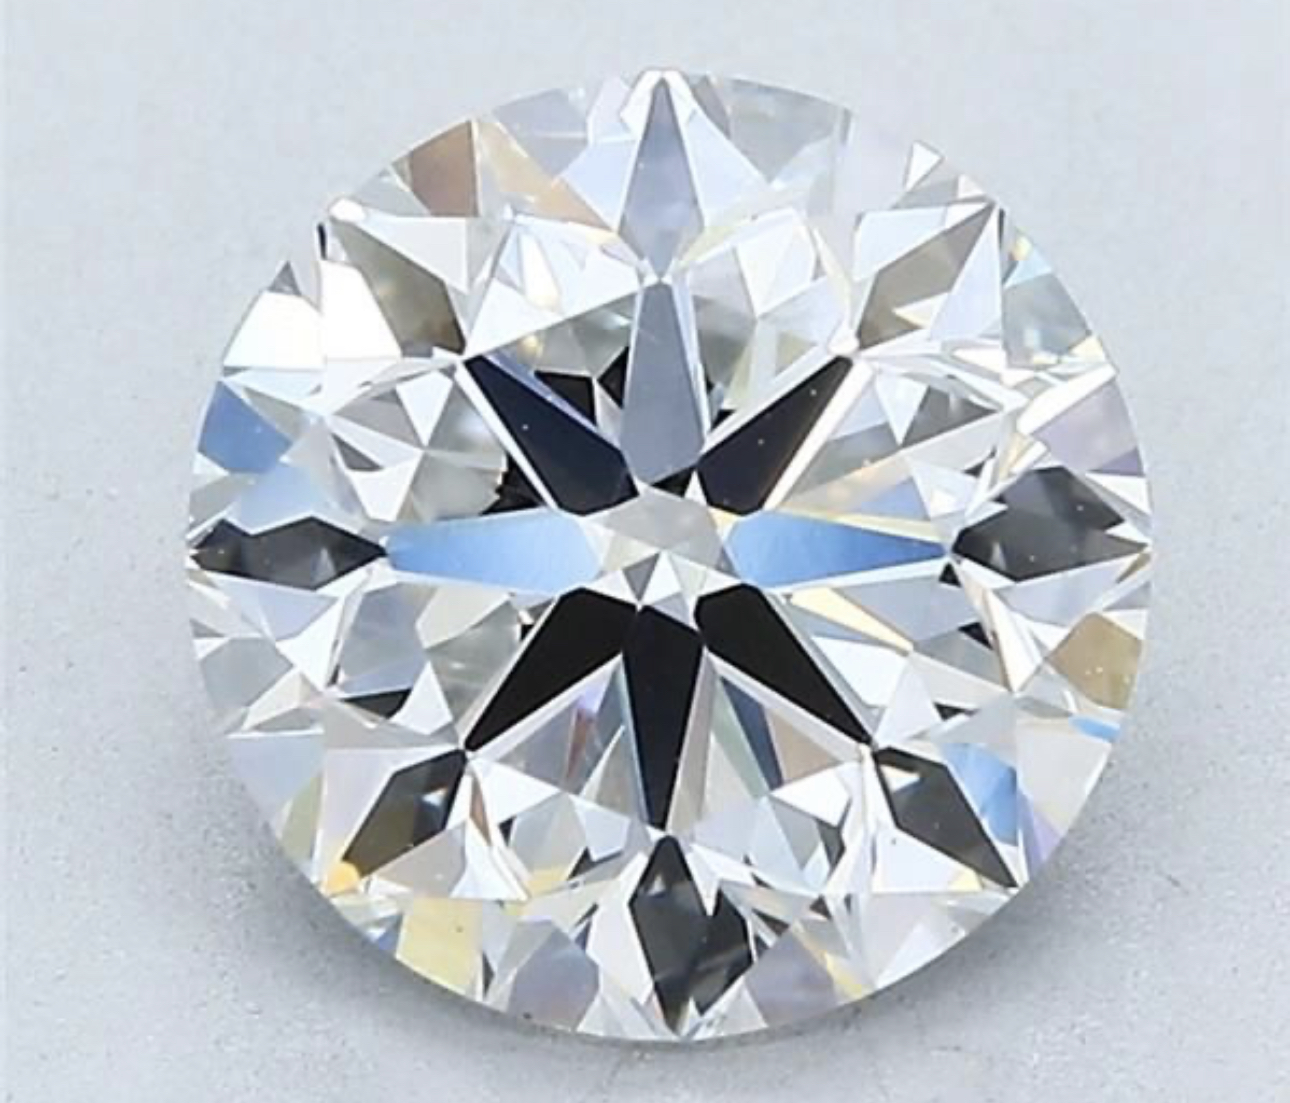 ** ON SALE ** Round Brilliant Cut Natural Diamond 2.21 Carat Colour F Clarity VS2 - DGI 142592297